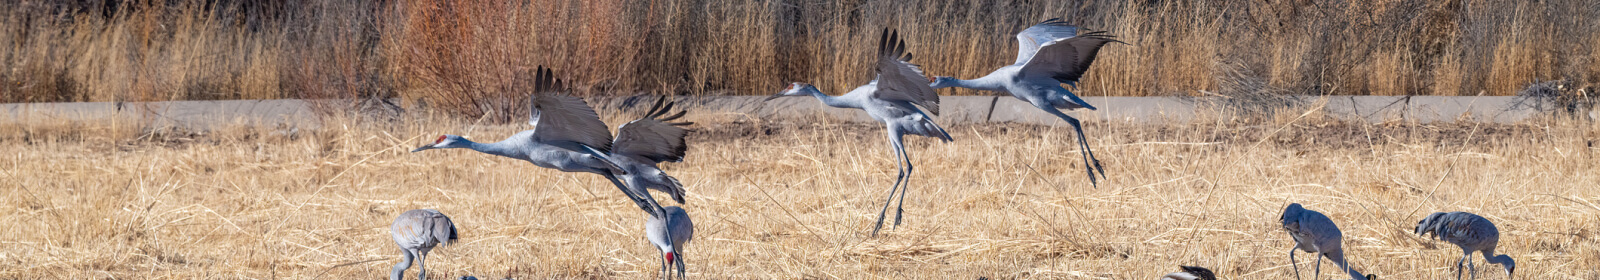 heron taking off in flight from a field